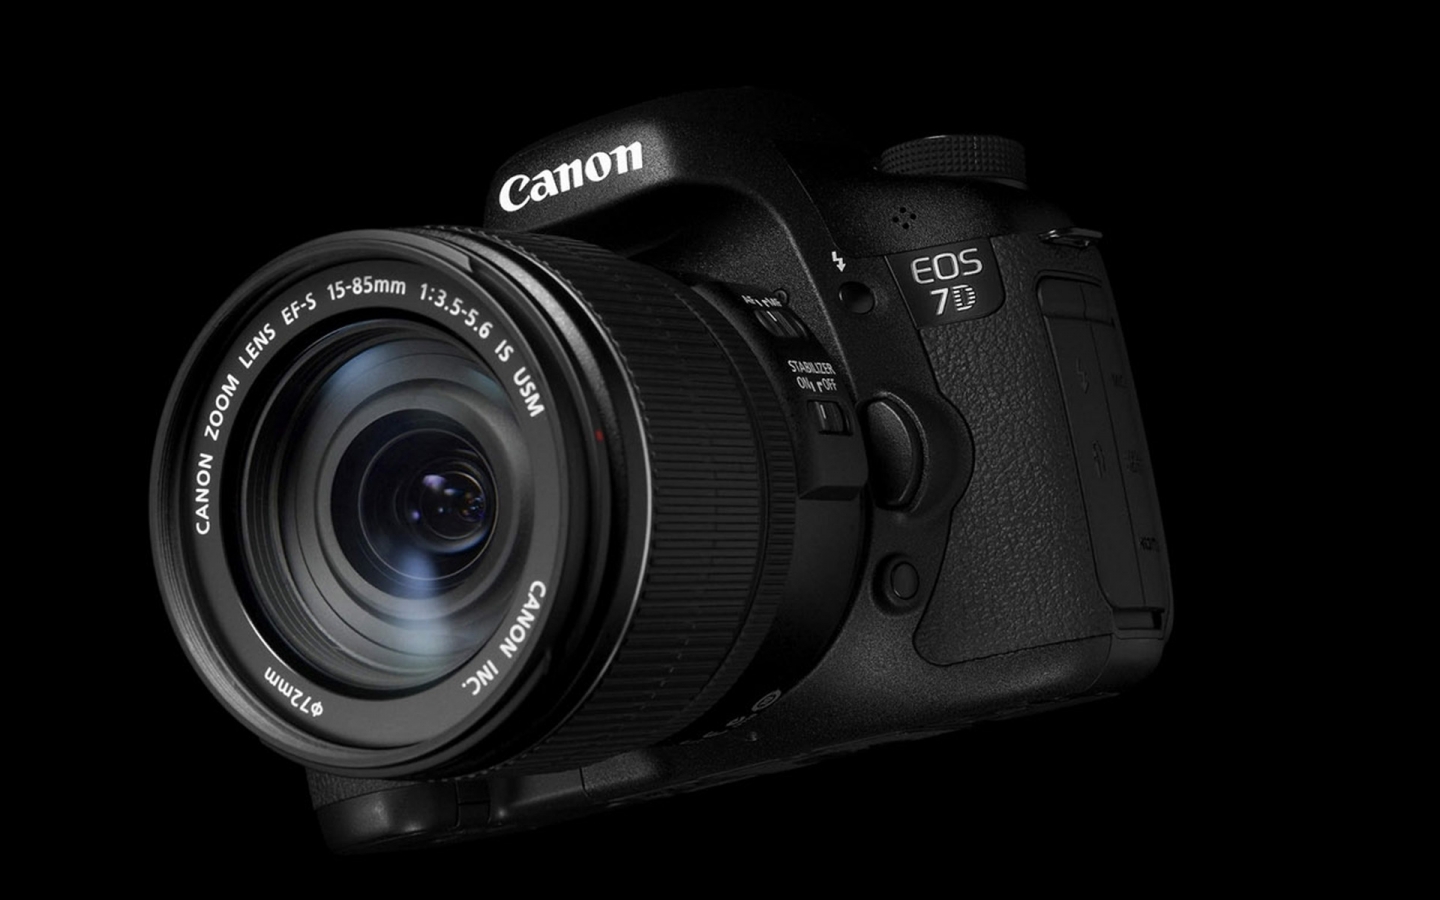 Canon EOS 7D Camera for 1440 x 900 widescreen resolution